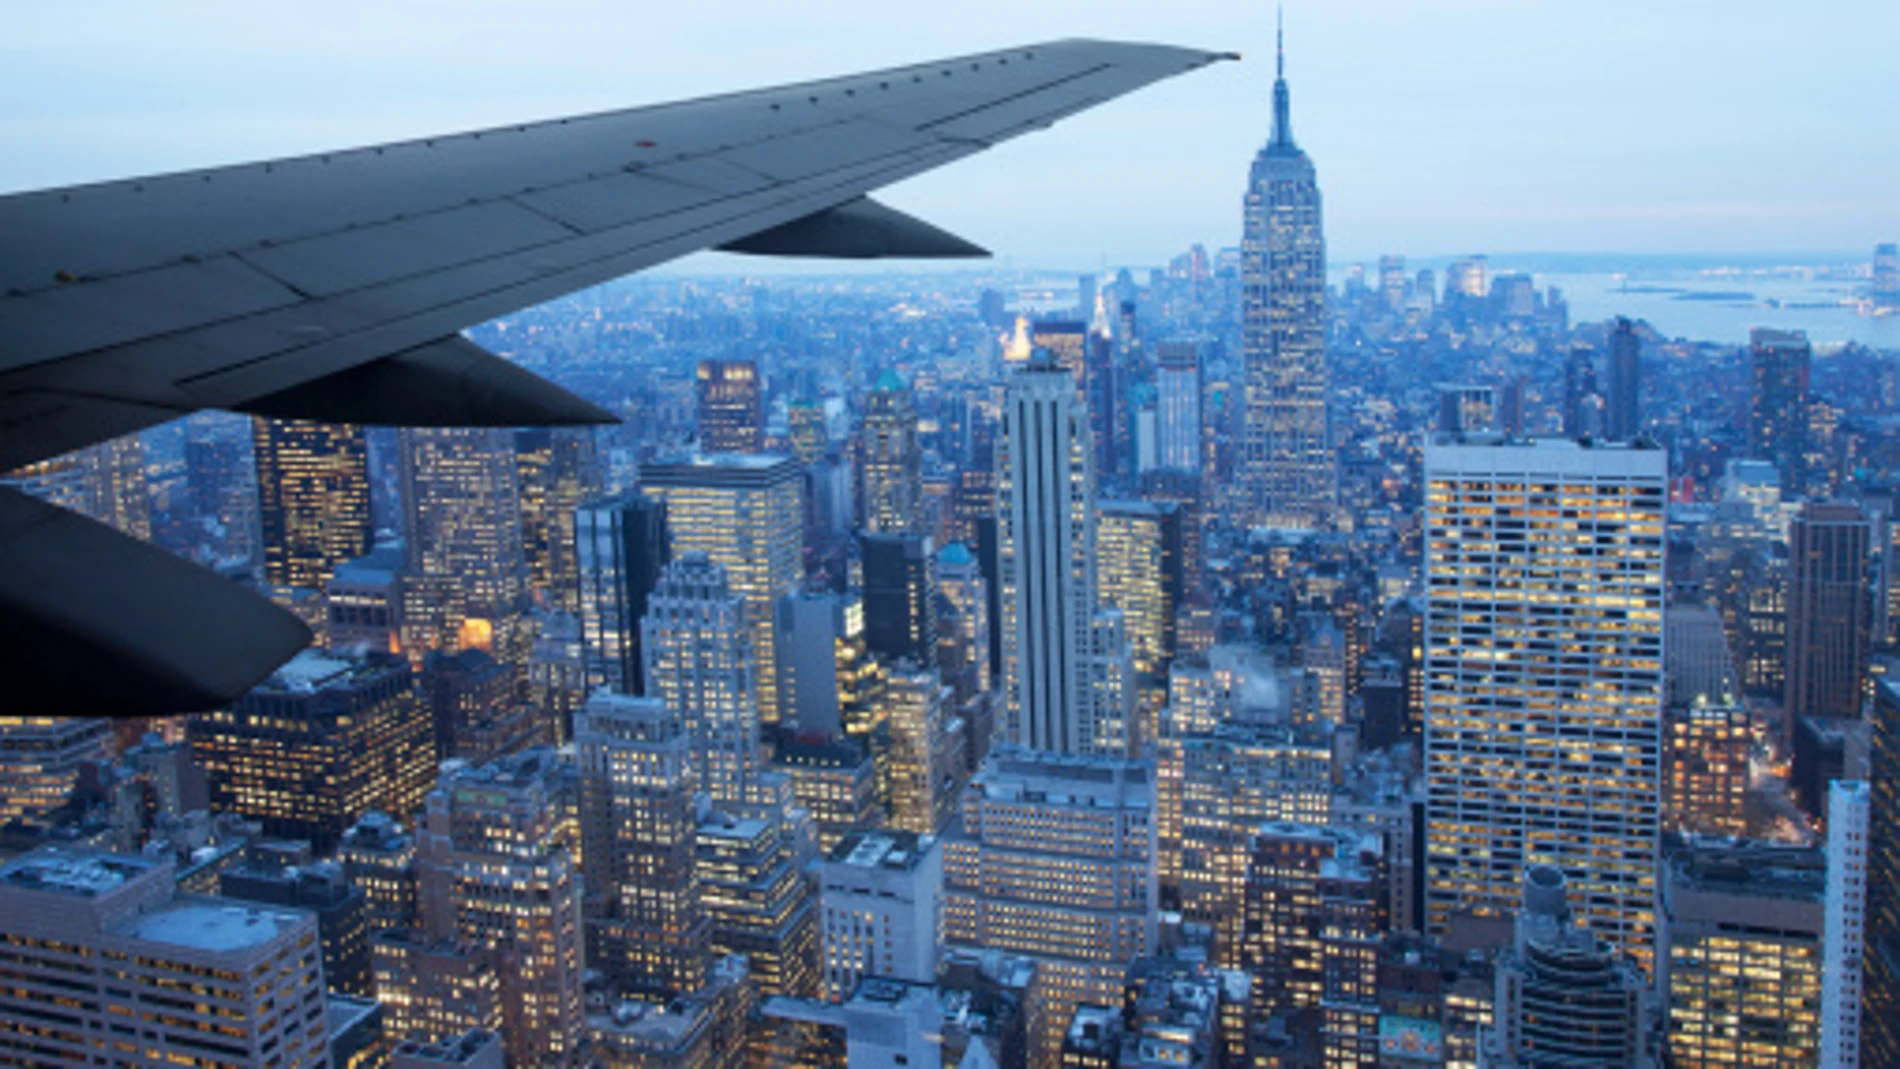 Por el viaje de ida en avión a Nueva York es más largo el de vuelta, si es la misma distancia?